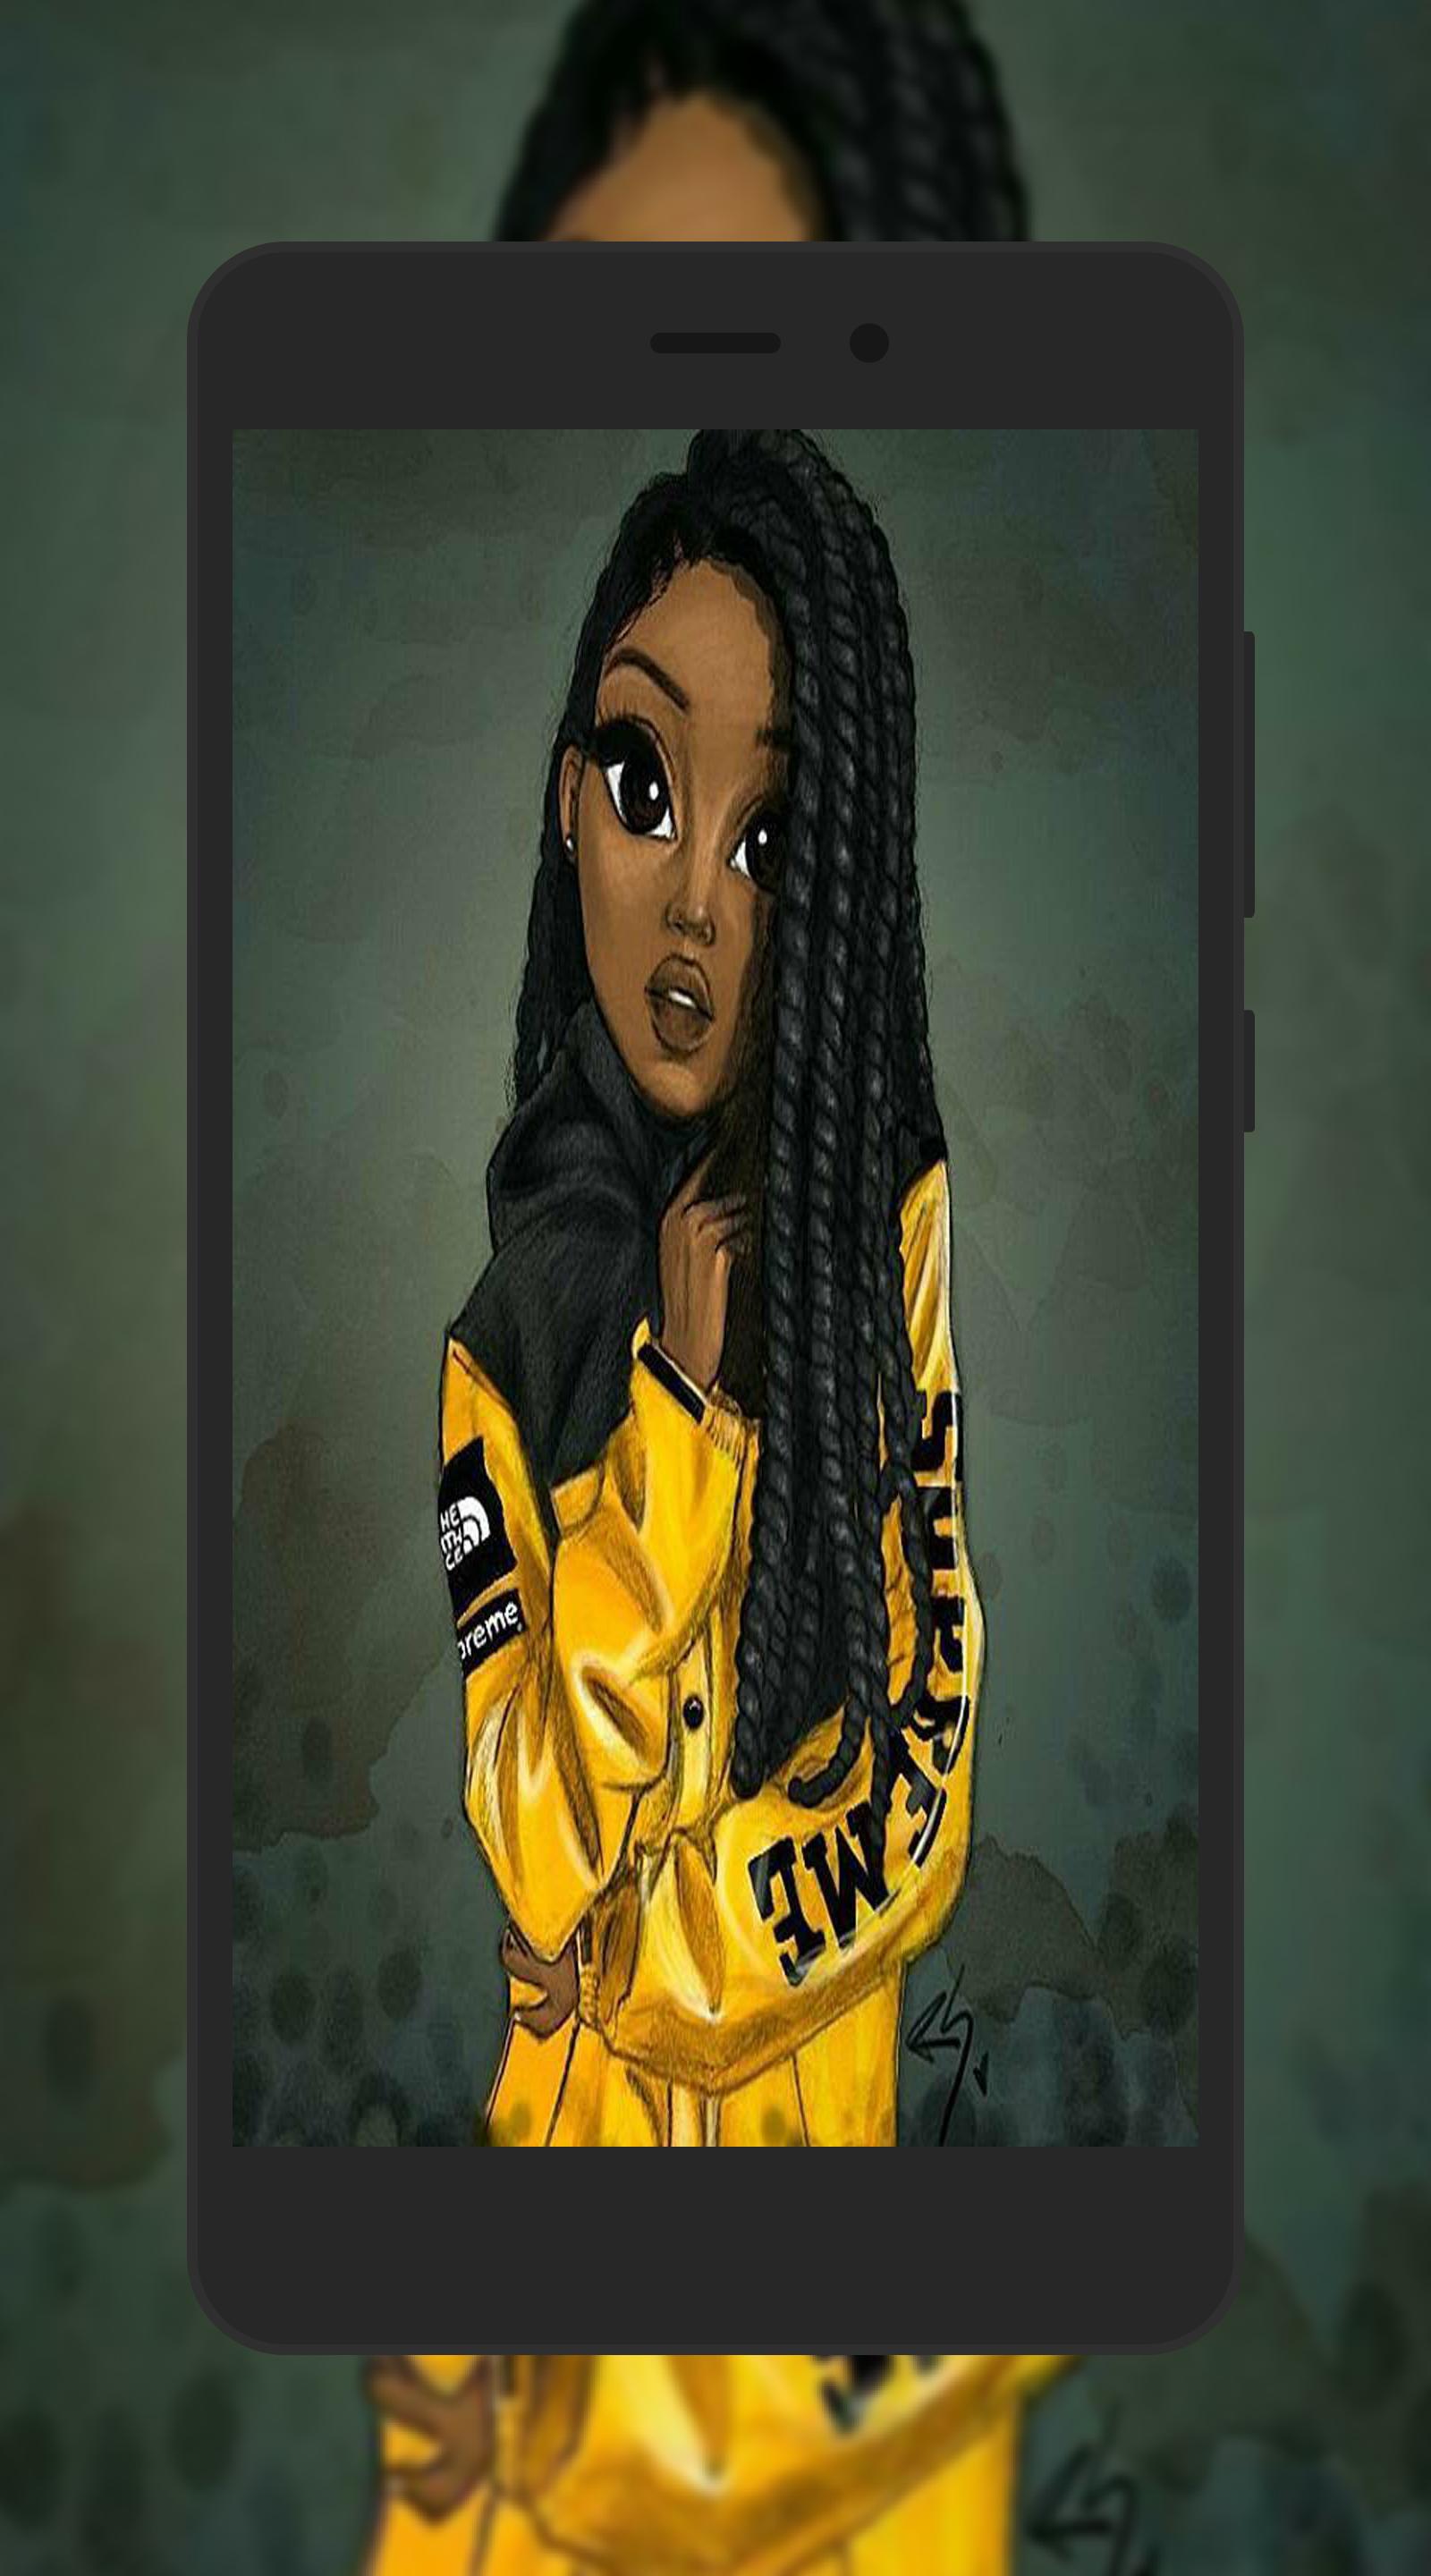 Black Queen Girly Wallpapers